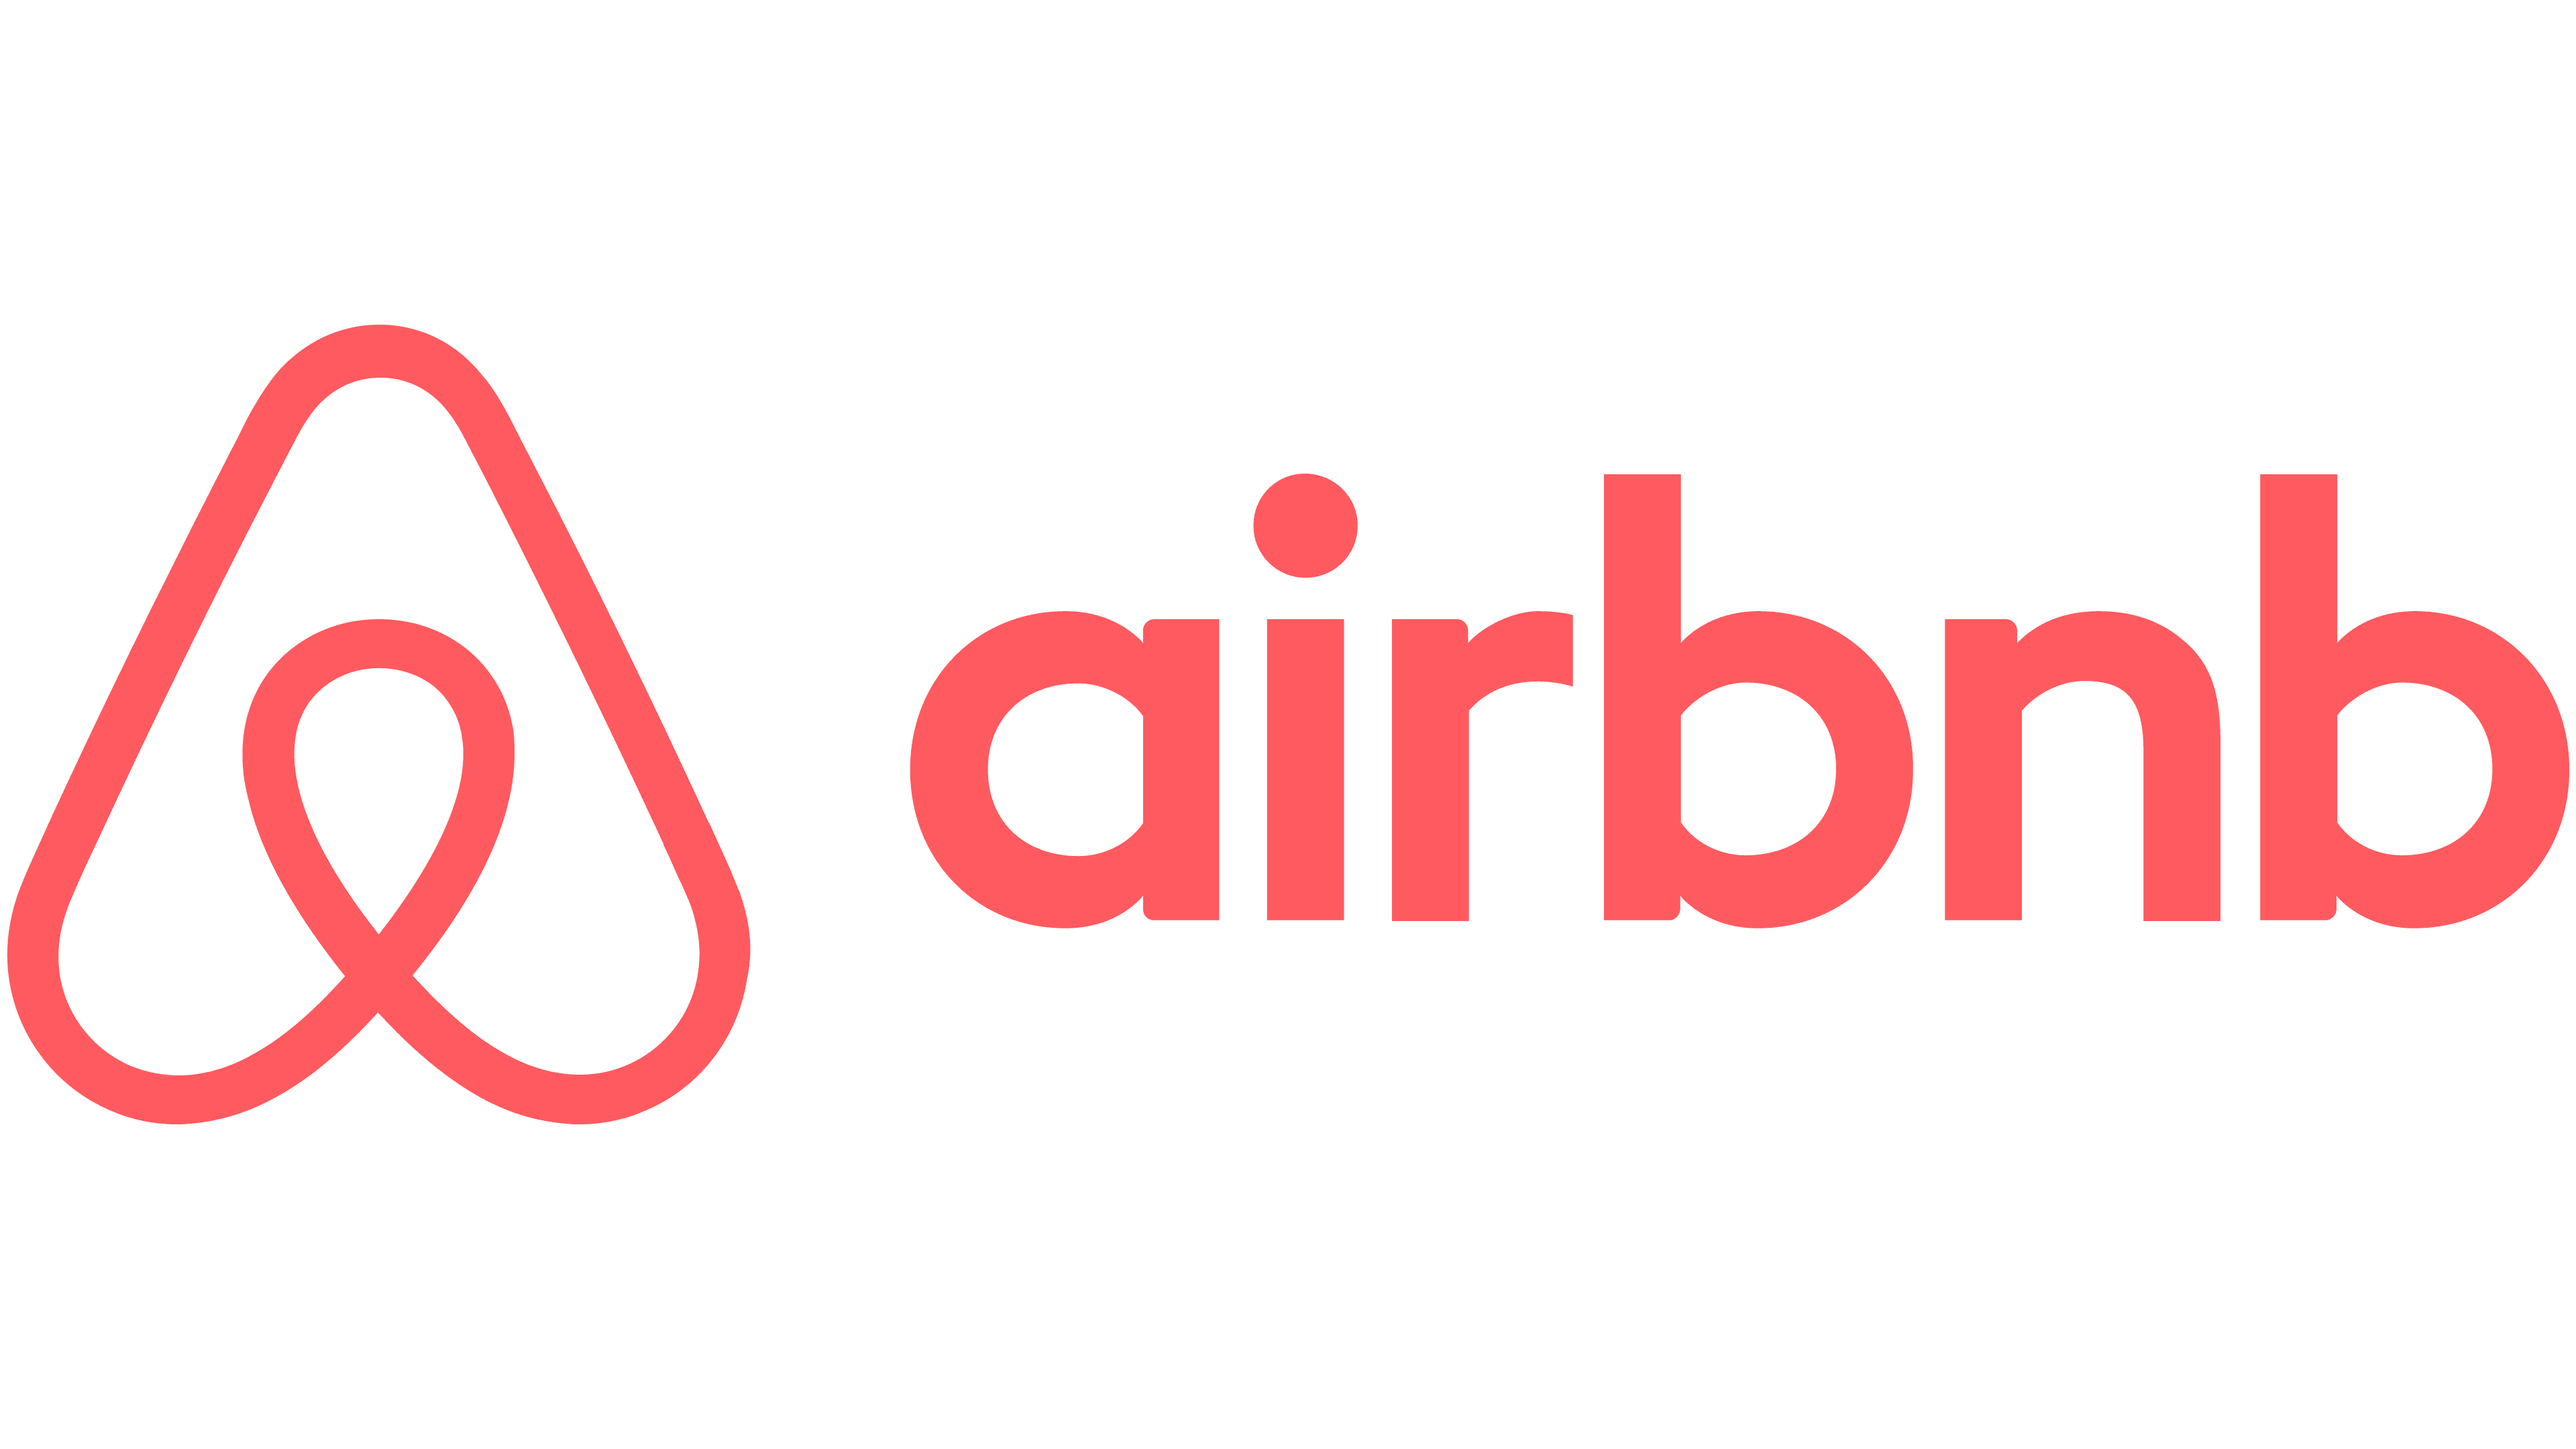 Airbnb Gutschein 